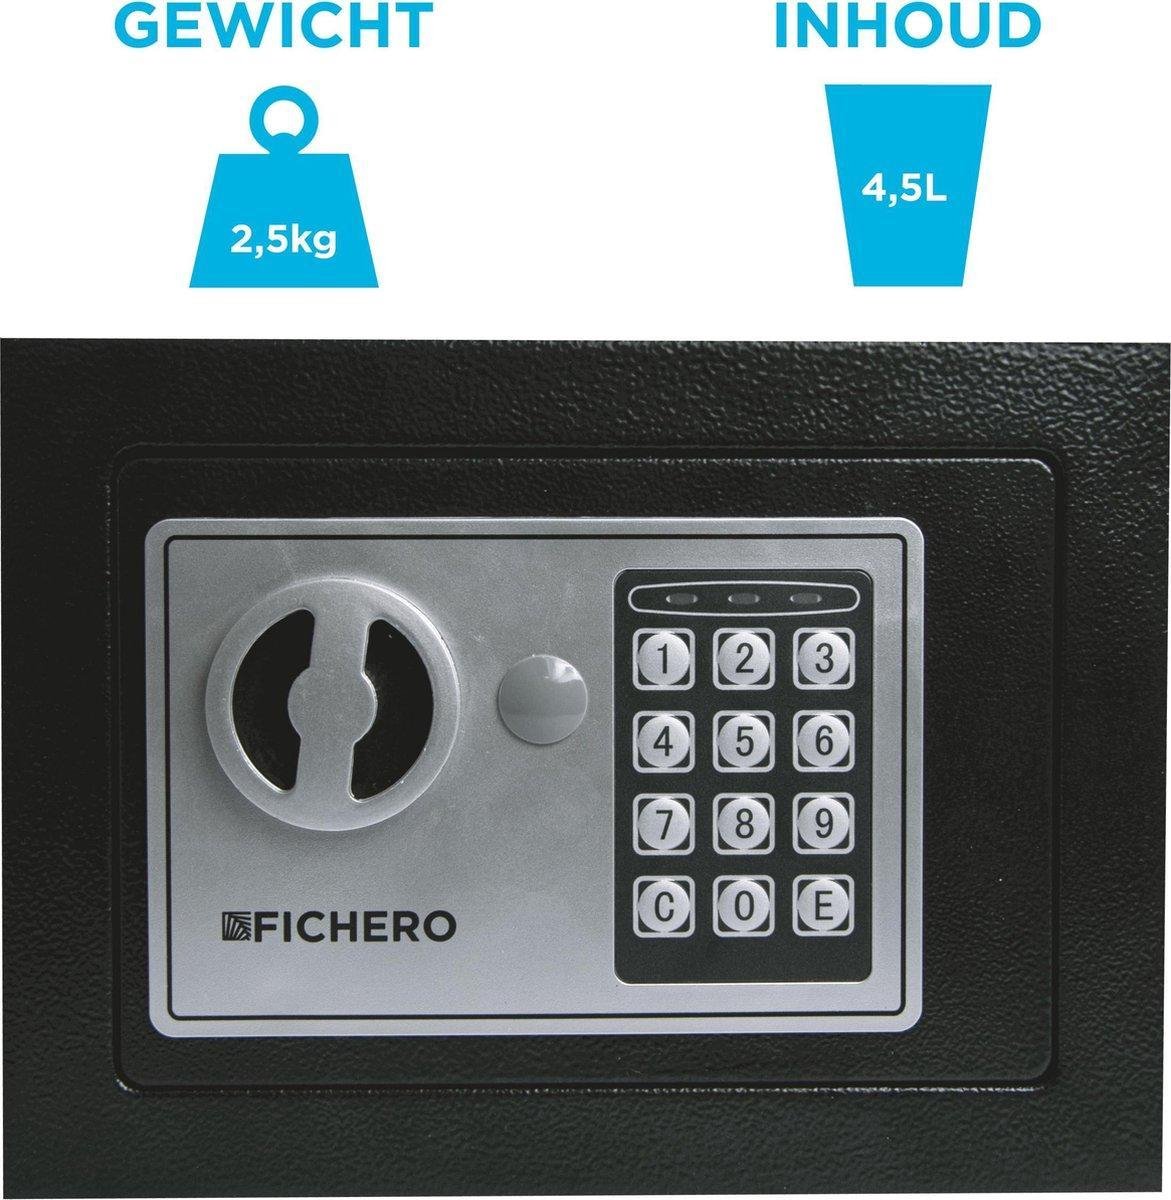 Elektrische kluis - Kluis - Kluisje - Safe - Locker - Kluis met code en sleutel - Supersafe - Product of the year - Ultra veilige kluis